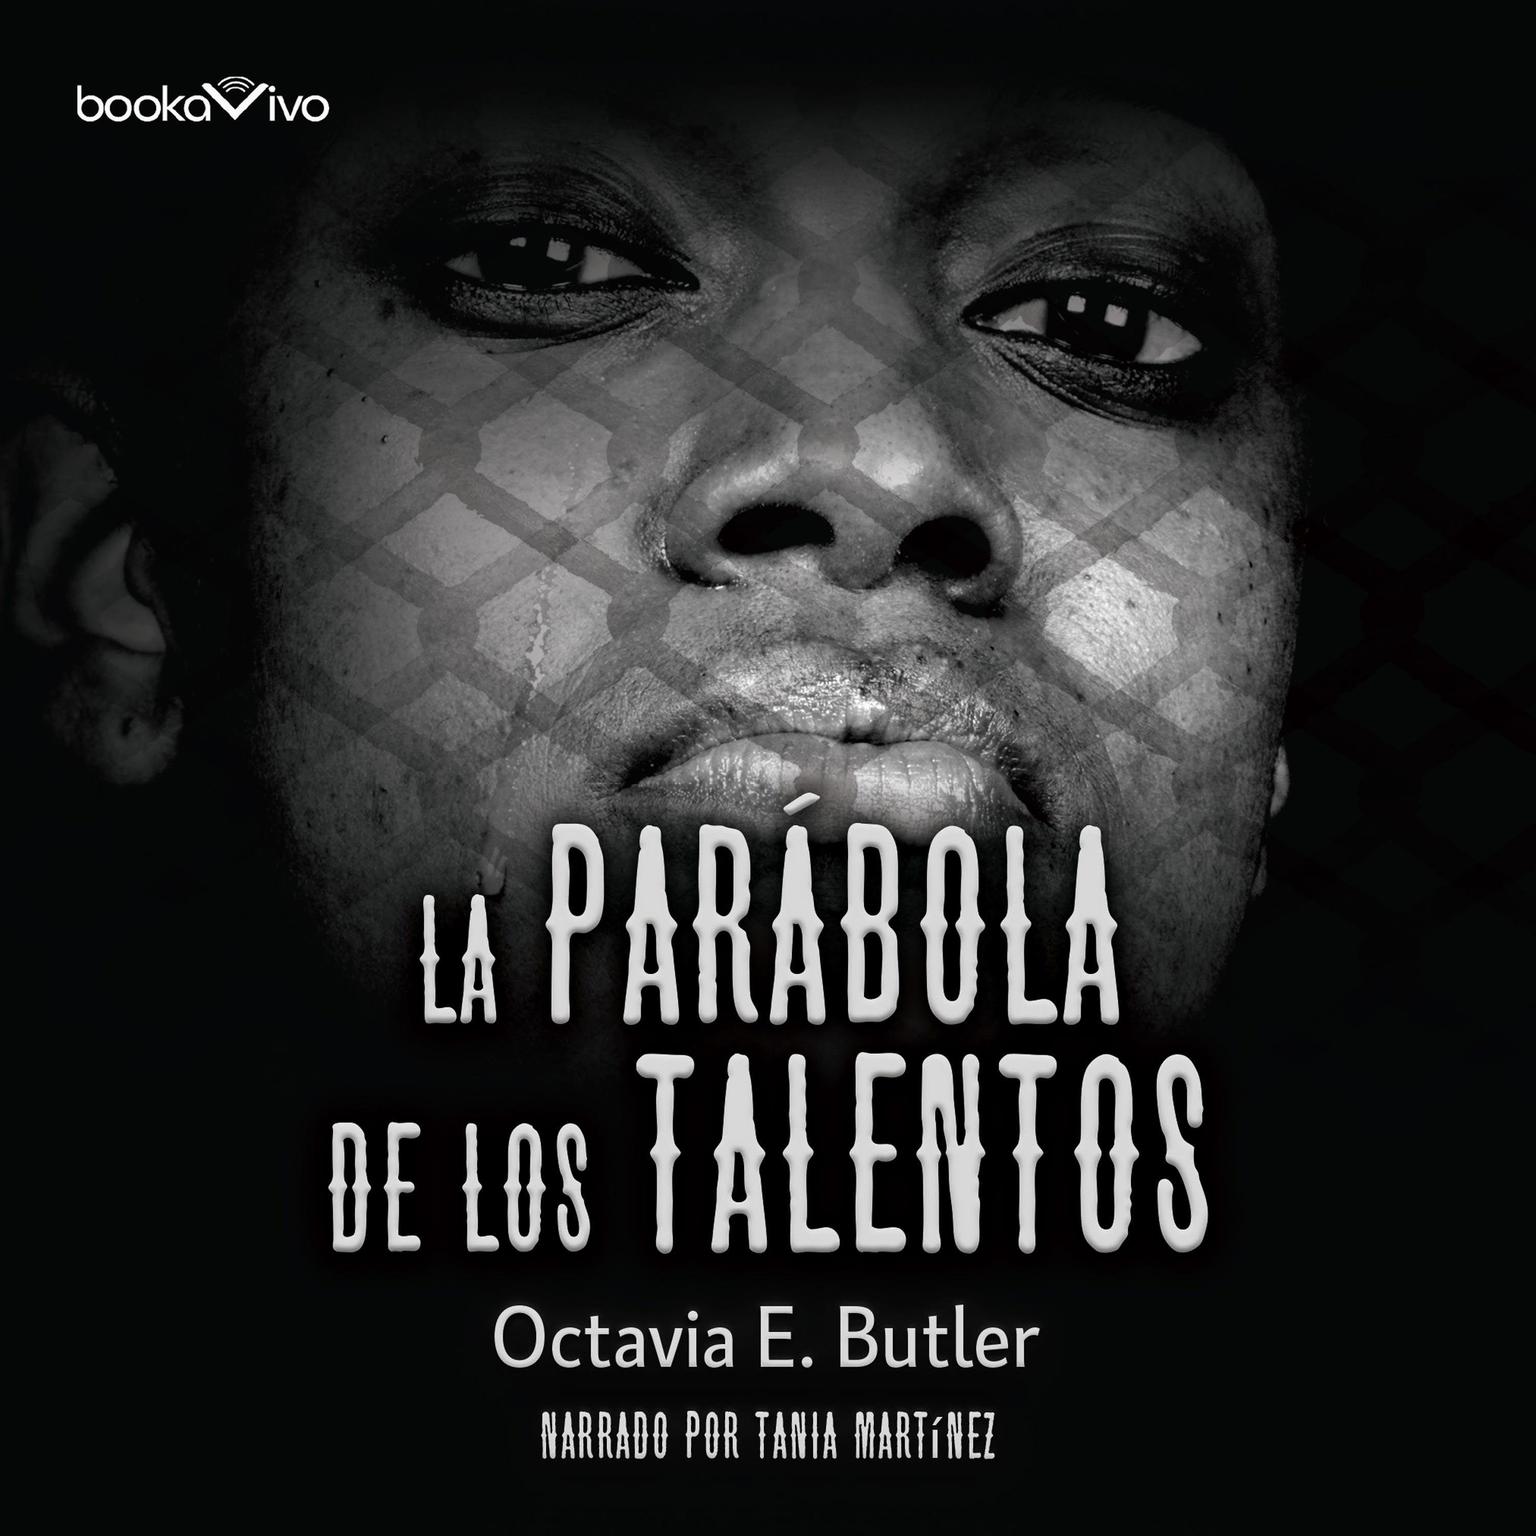 La parábola de los talentos Audiobook, by Octavia E. Butler